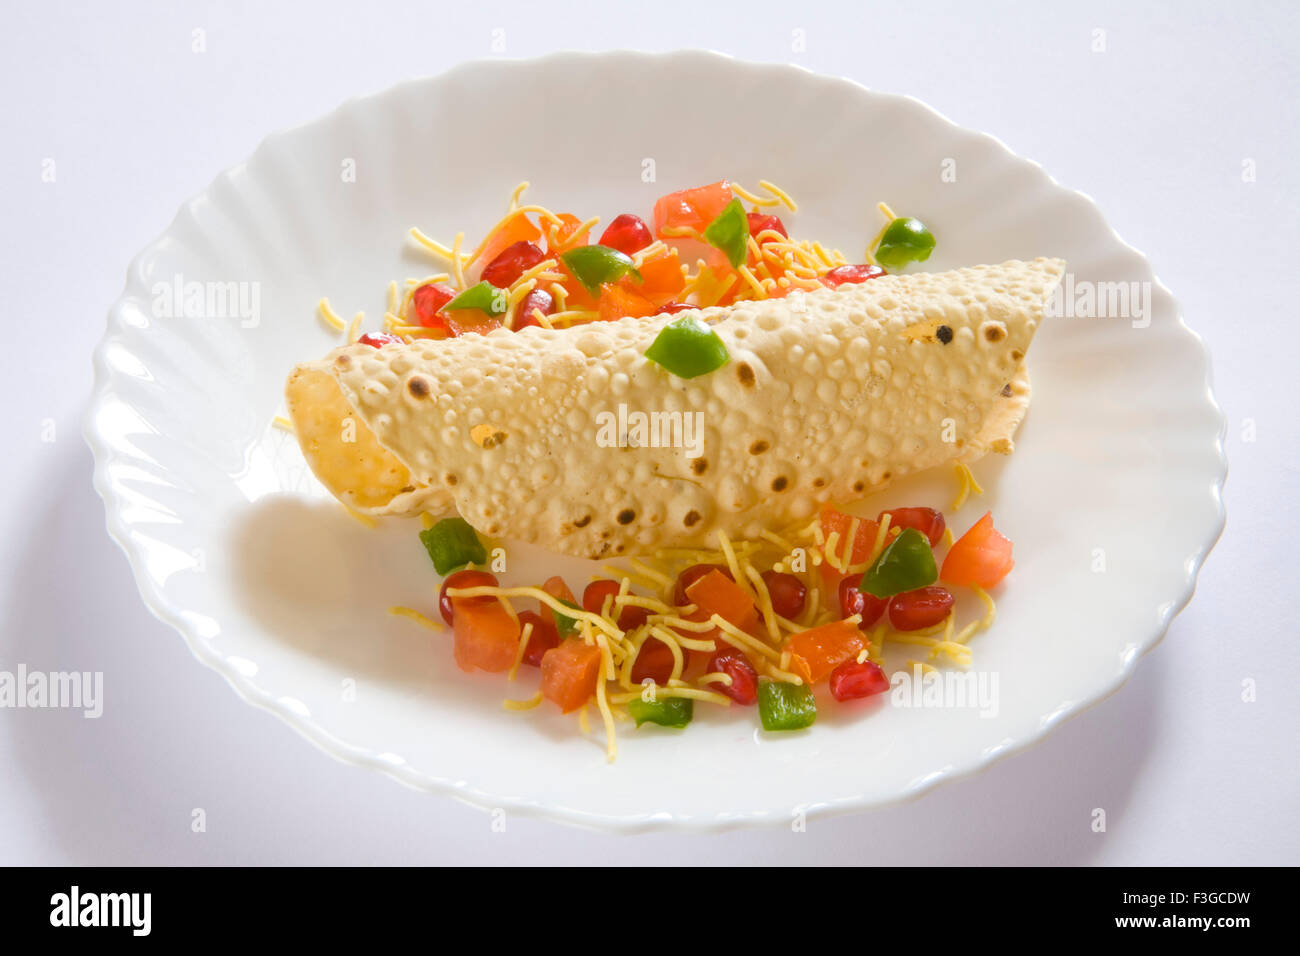 Indisches Essen Papad; Poppadoms sind Runde Wafer dünne Scheiben aus verschiedenen Linsen oder Getreide Mehl gebraten serviert oder Deep Fried Stockfoto